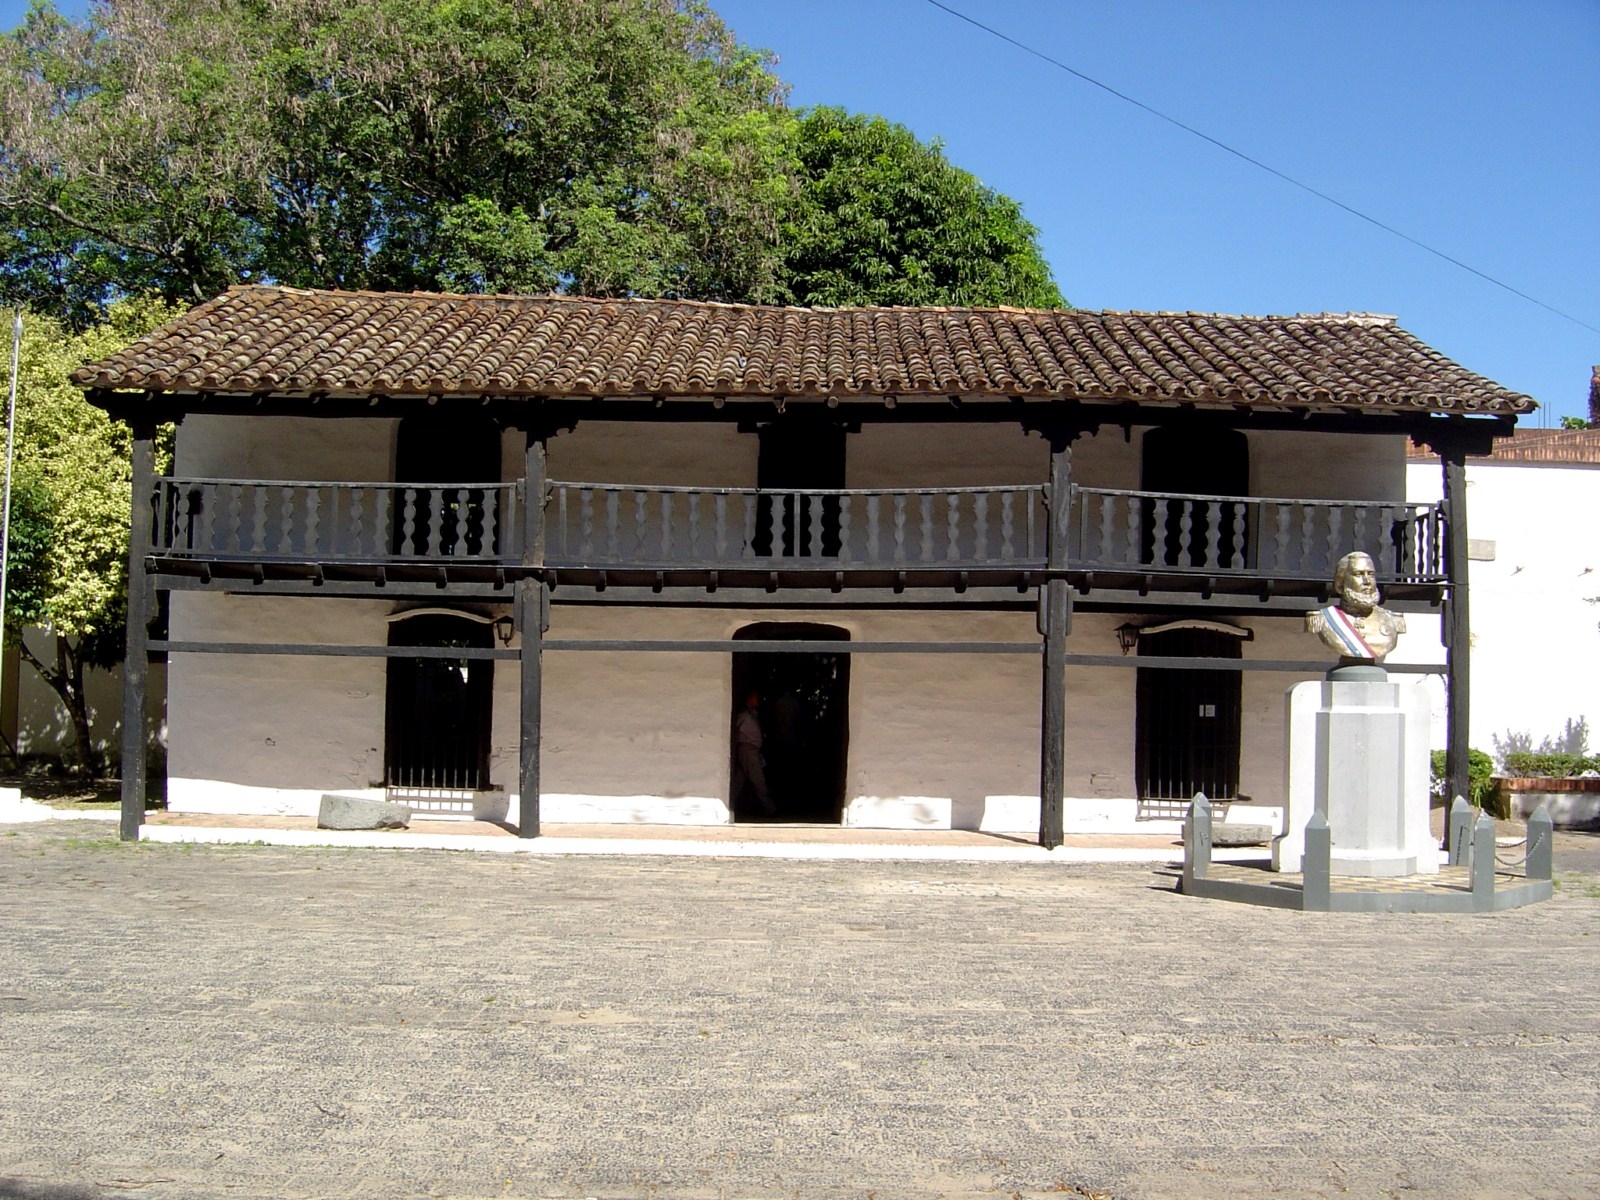 City Tour - Casco Histórico de Pilar